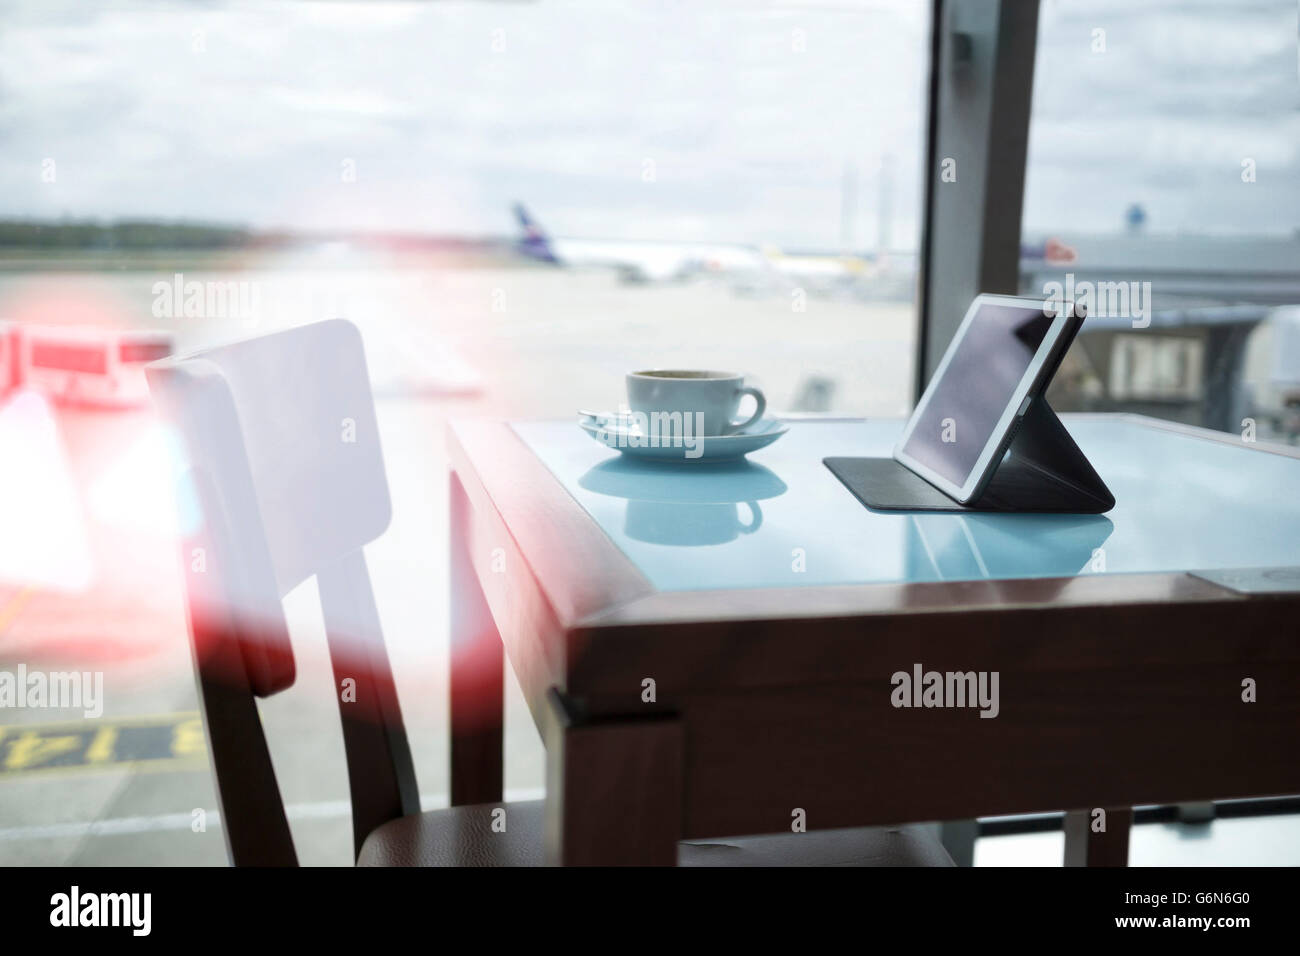 Tazza di caffè e tavoletta digitale sulla tabella all'aeroporto Foto Stock